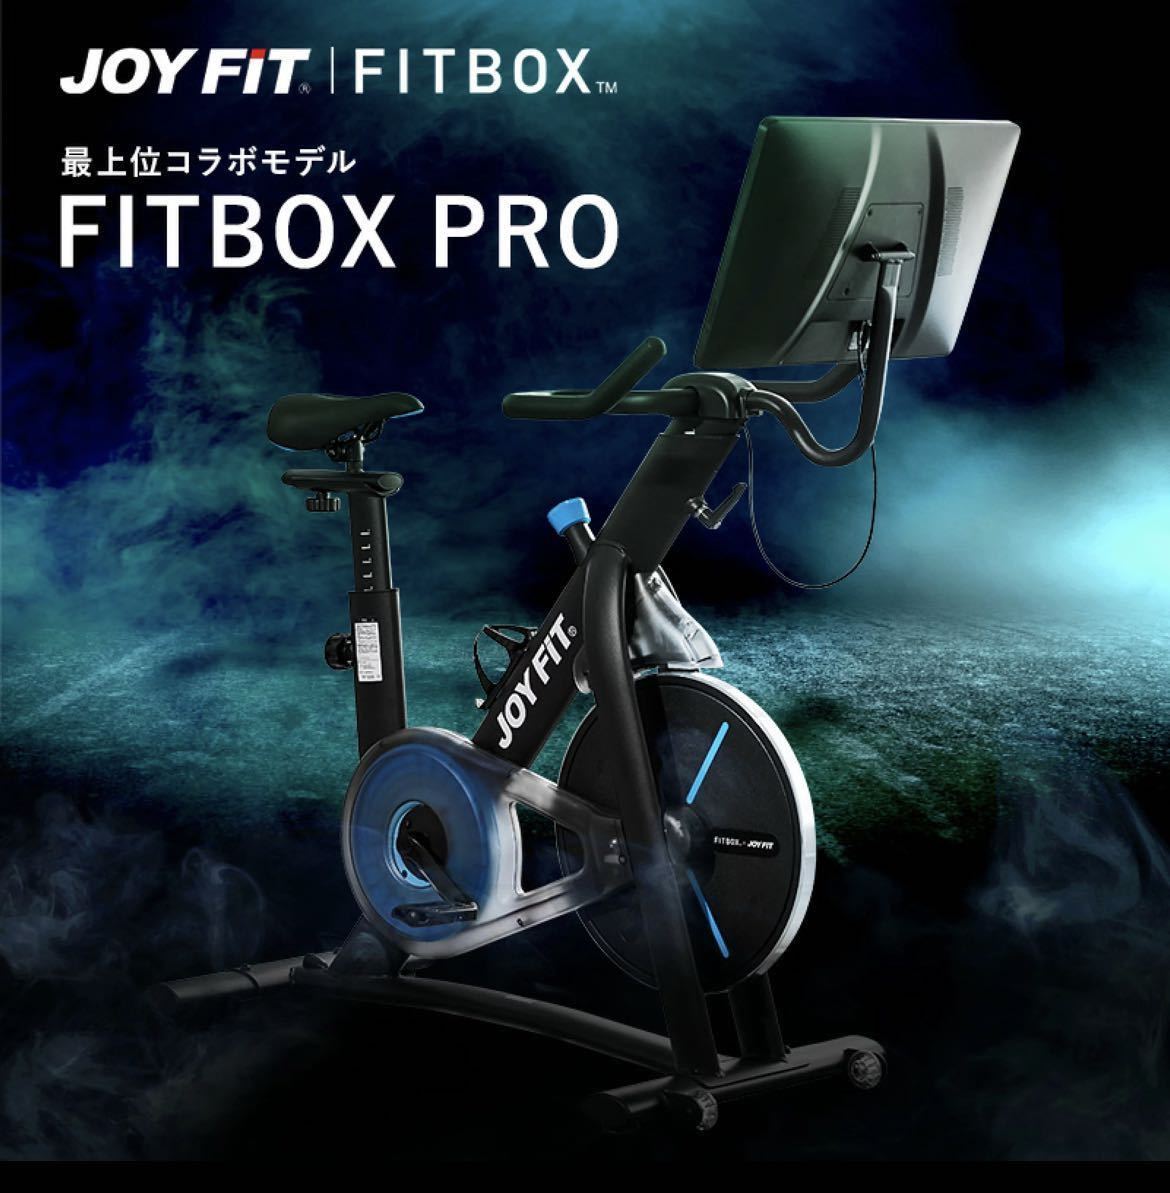 FITBOX Pro 特別モデル JOYFIT コラボ - スポーツ別